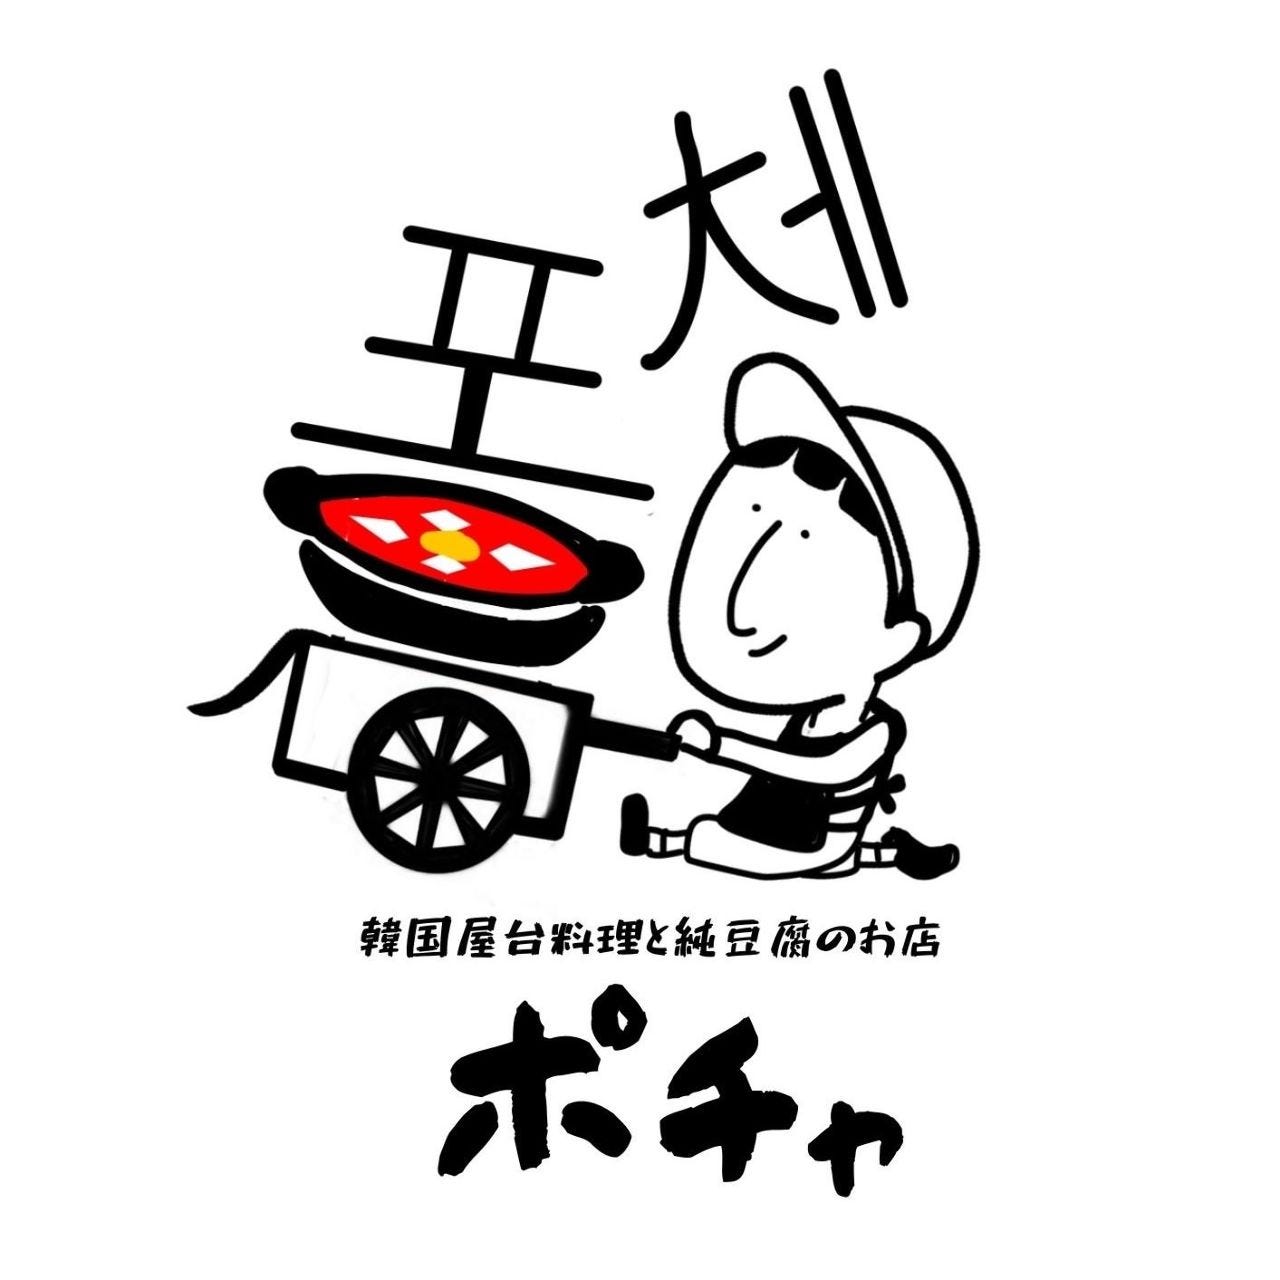 韓国屋台料理と純豆腐のお店 ポチャ ひたち野うしく店